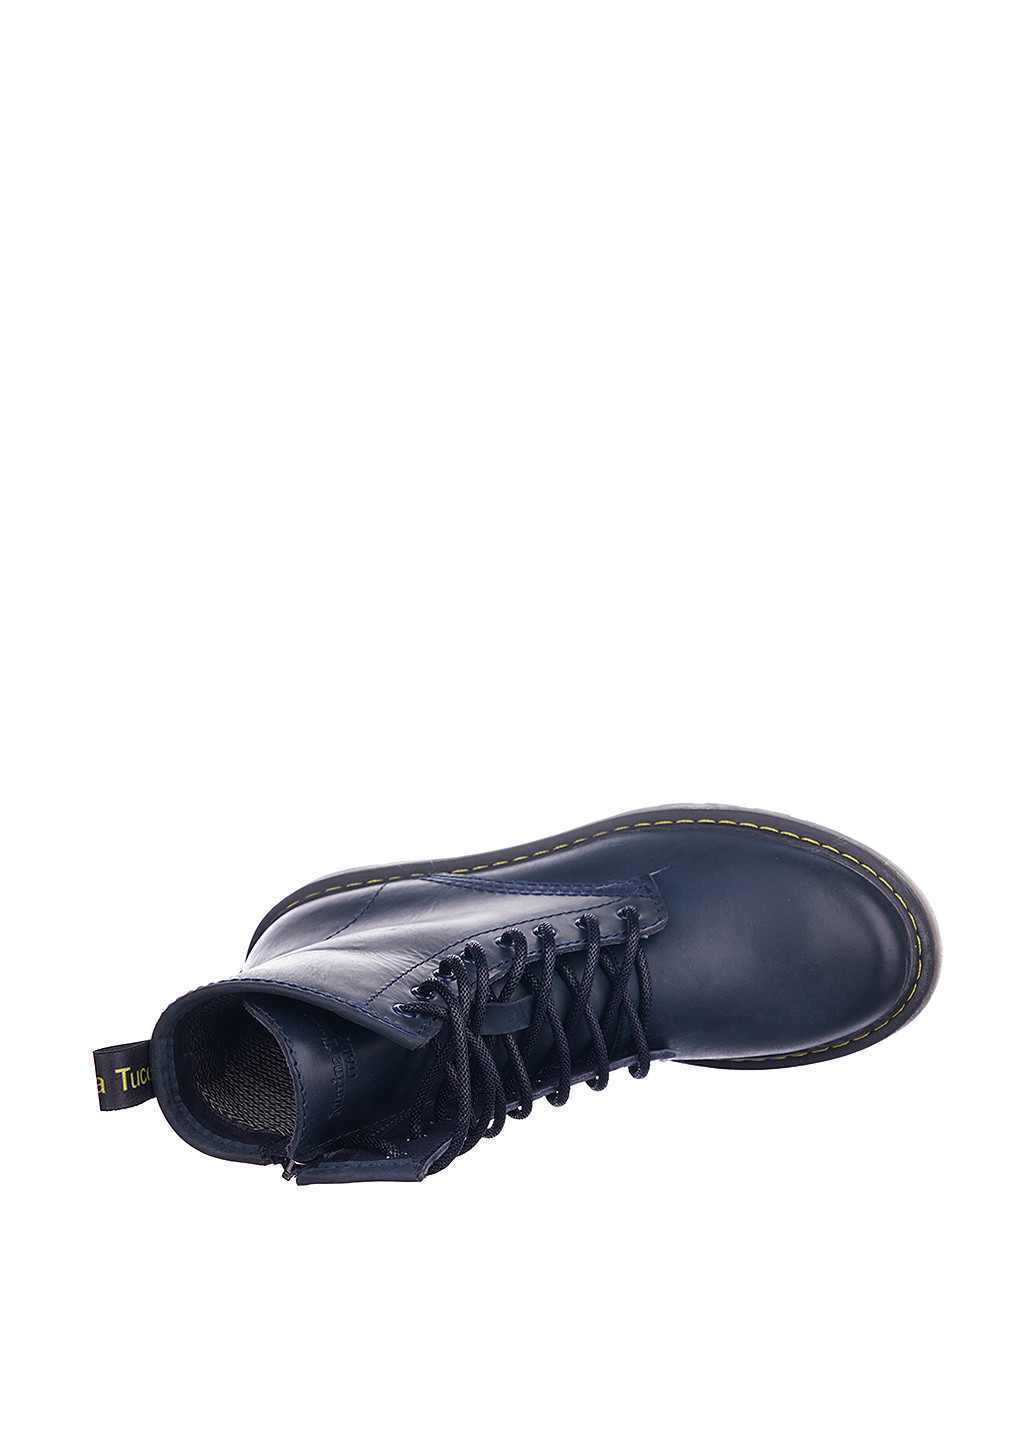 Осенние ботинки берцы Maria Tucci со шнуровкой